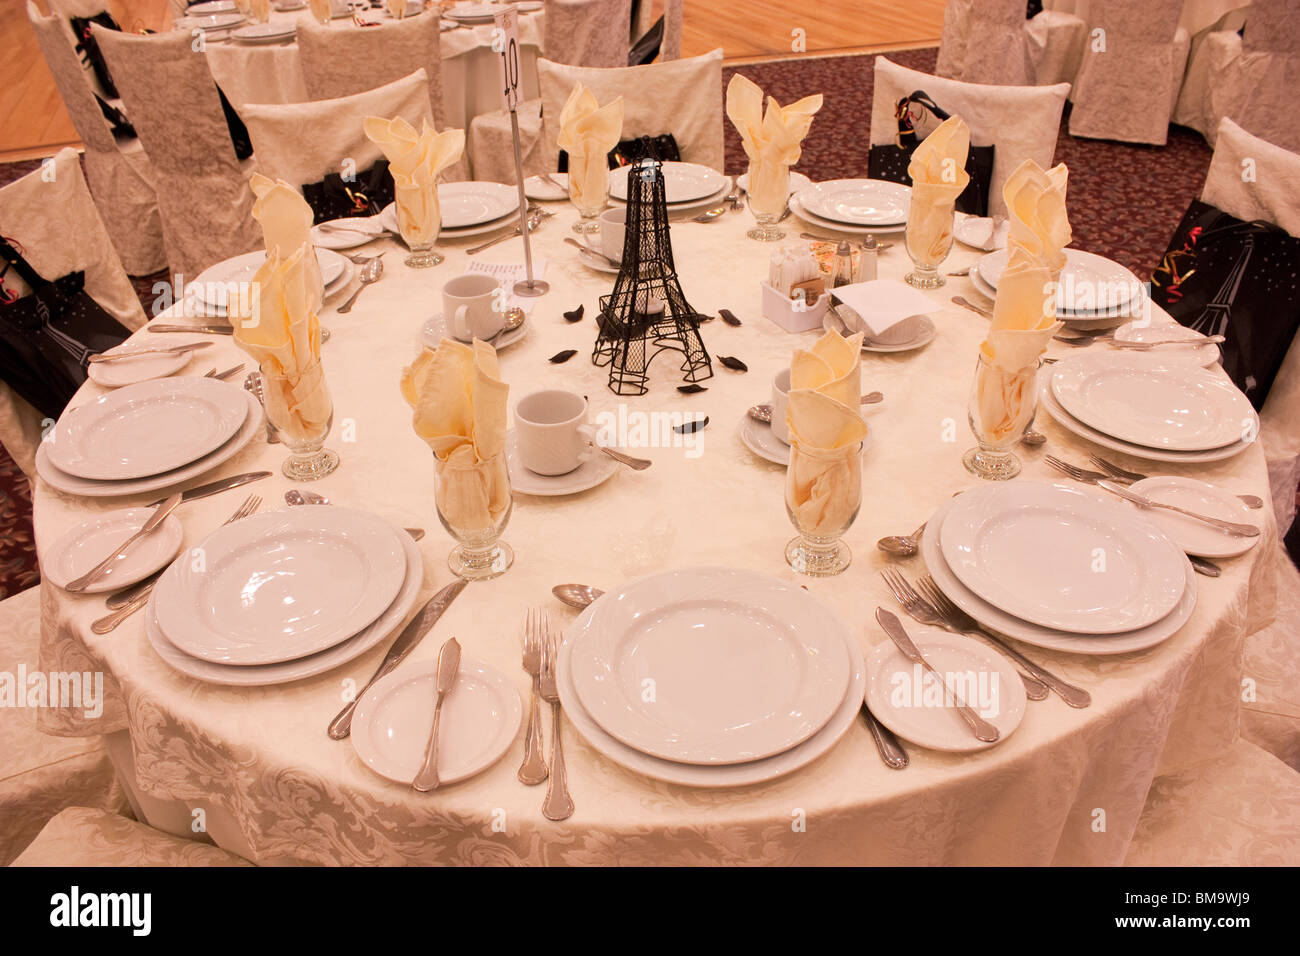 Set de table en tissu blanc dîner plaques Banque D'Images